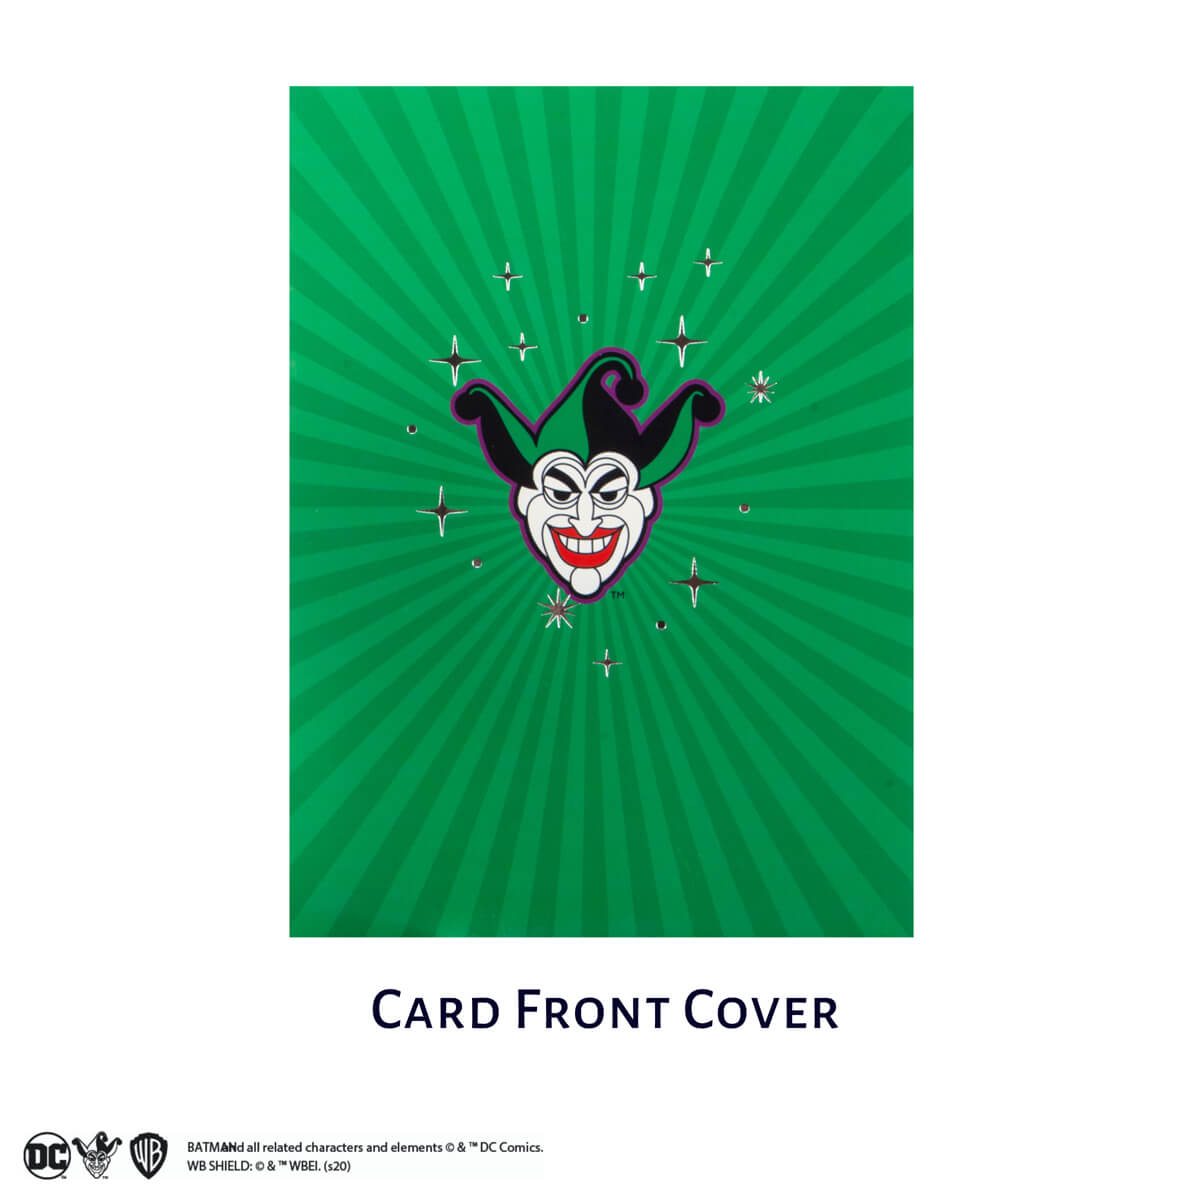 The Joker Batman Pop Up Card Close Up Image